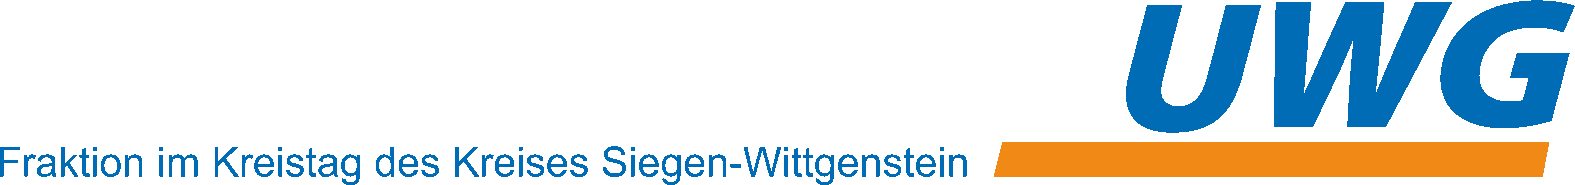 UWG Fraktion im Kreistag des Kreises Siegen-Wittgenstein - 